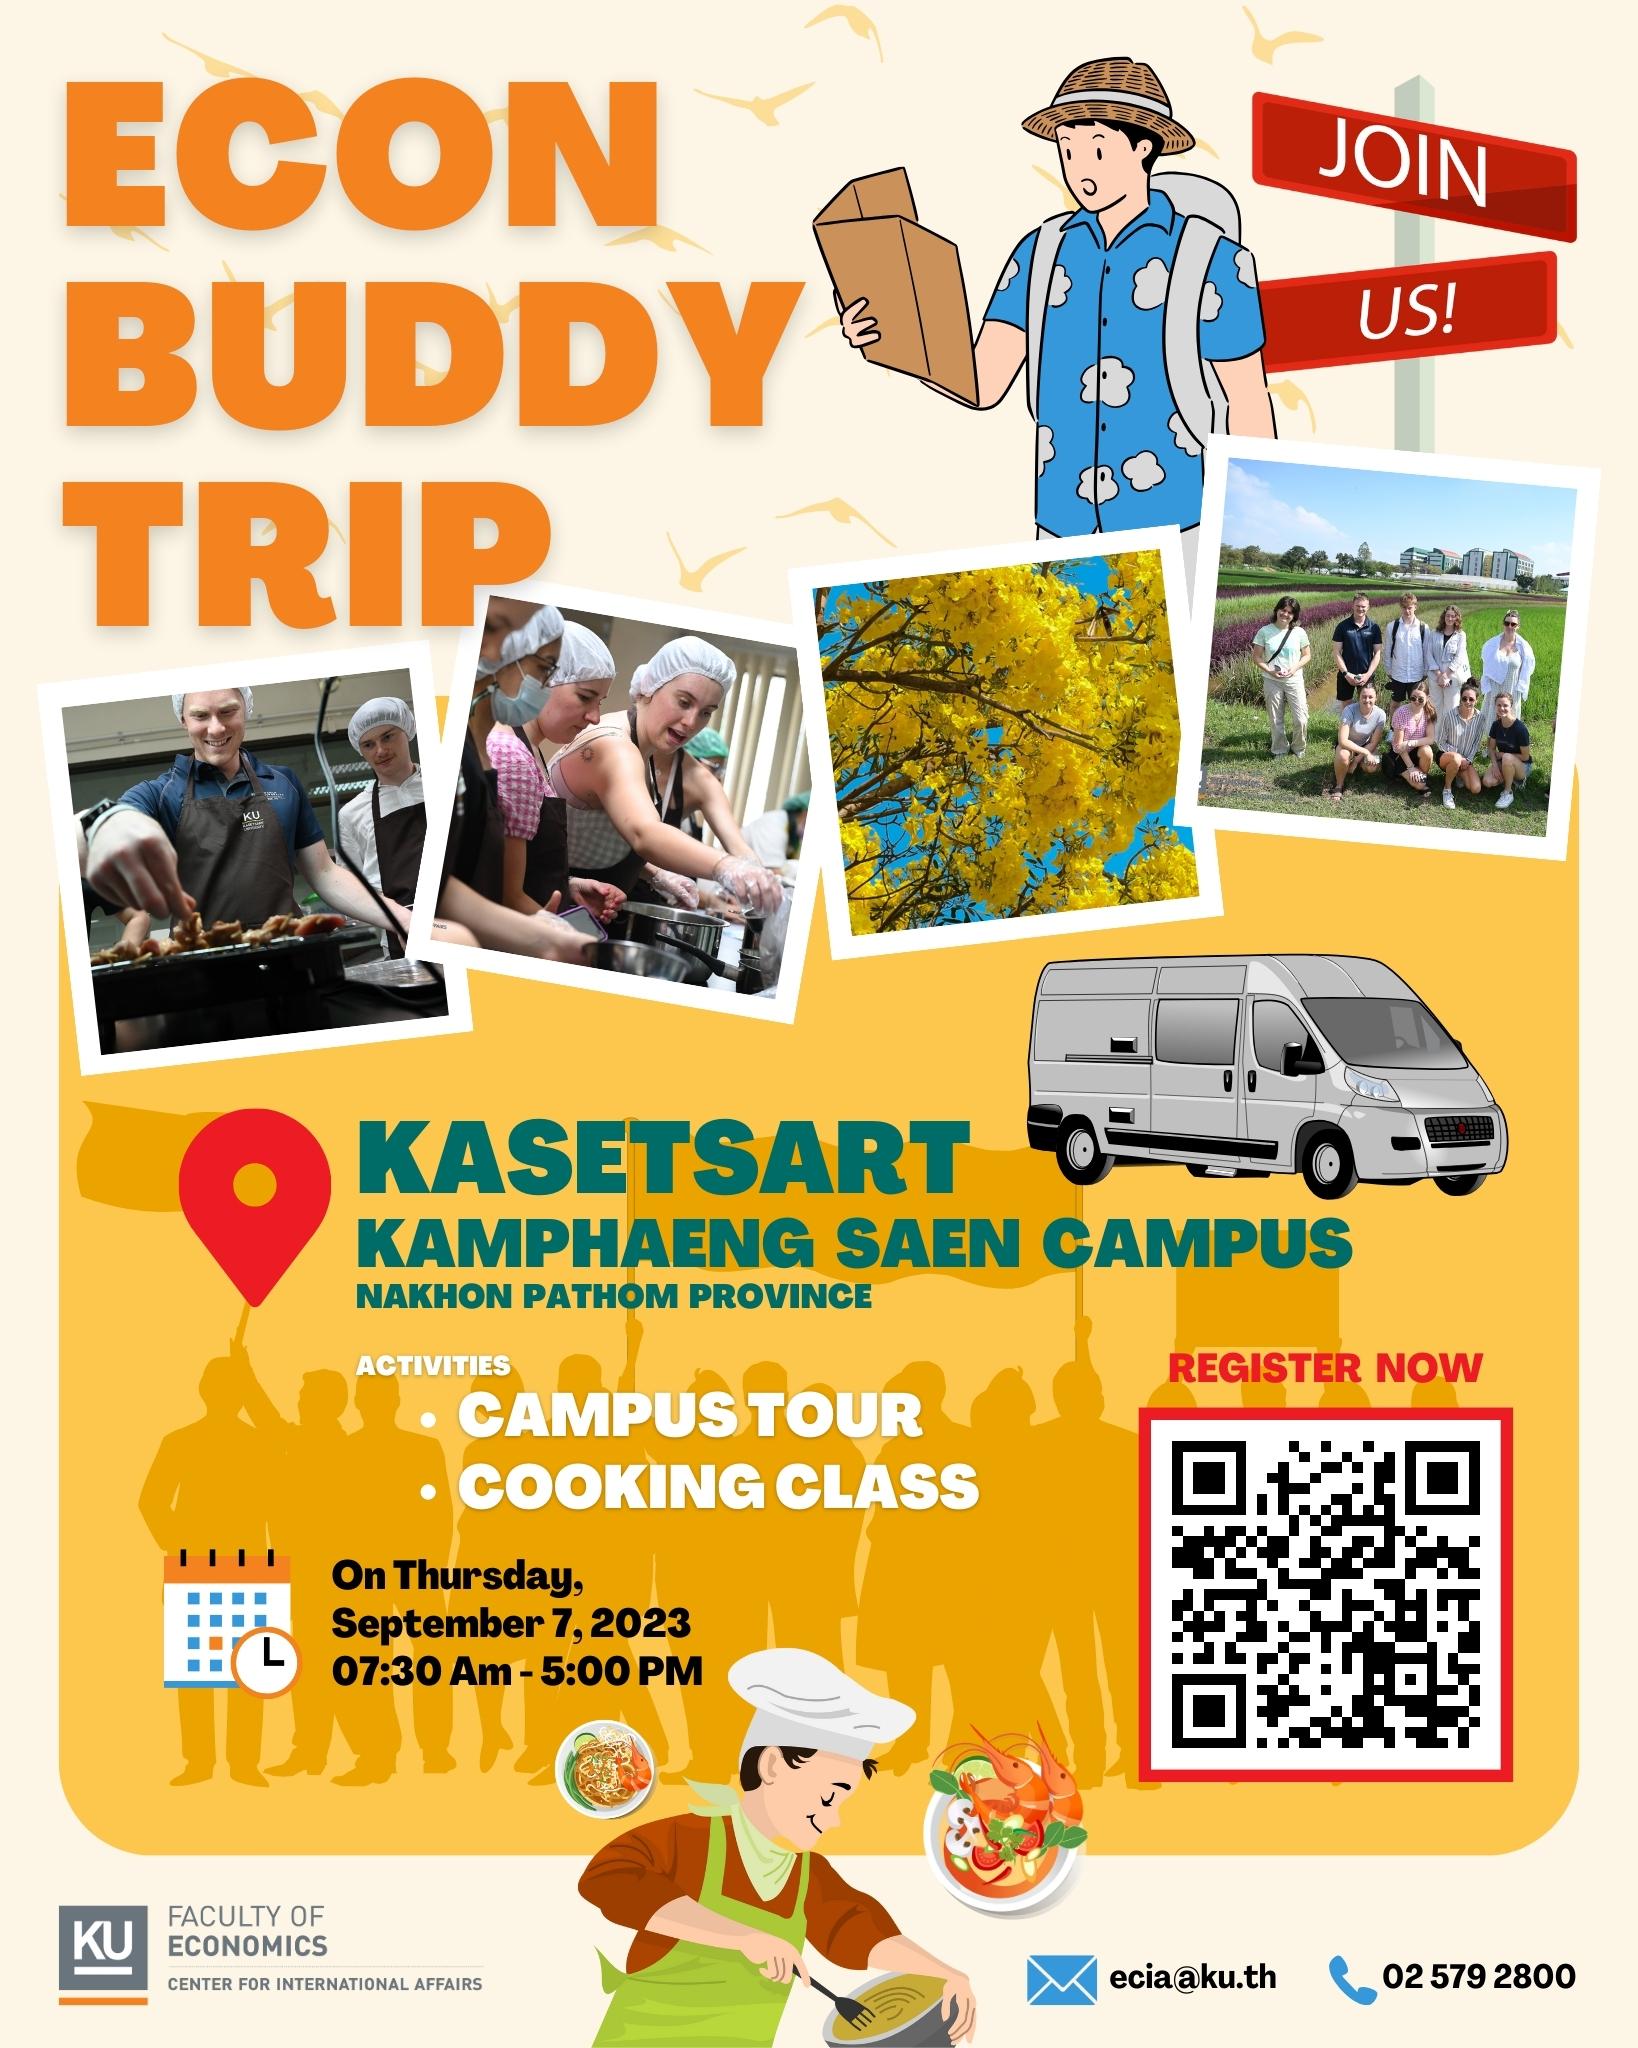 ECON Buddy Trip 2023 @ KU Kamphaeng Saen Campus